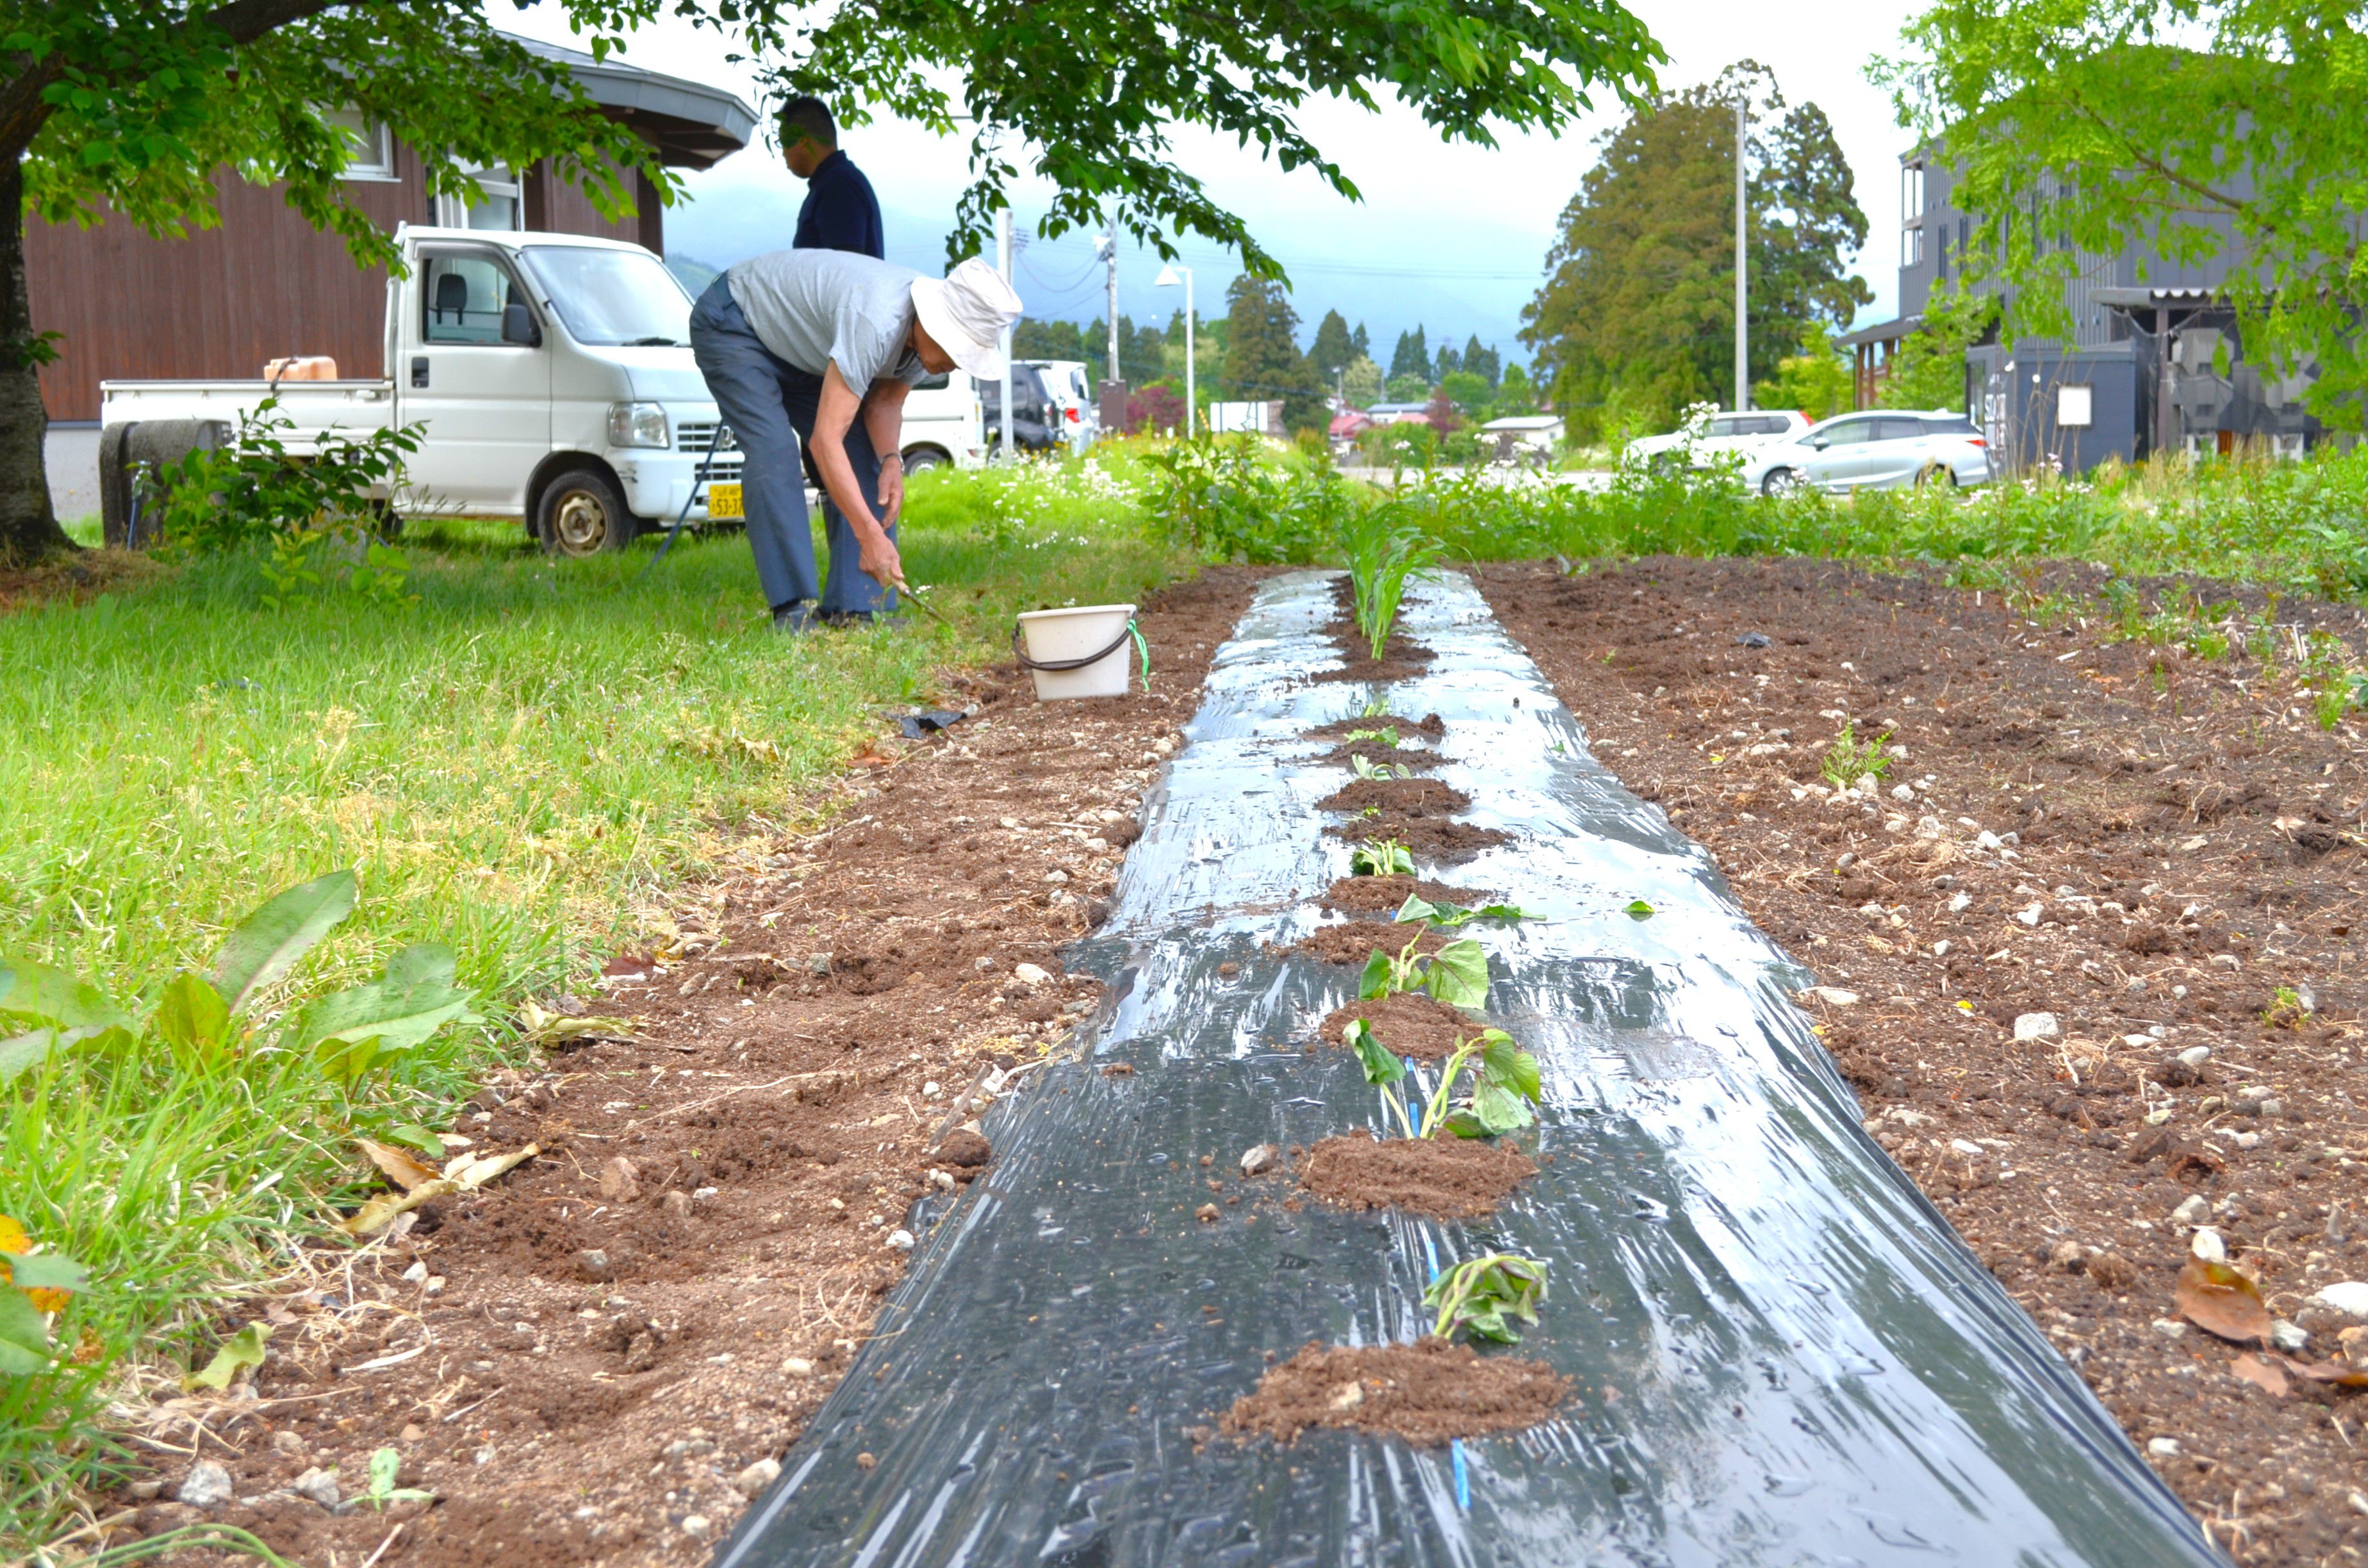 公民館の畑にさつまいもとトウモロコシを植えました🍠🌽（中部地区公民館）